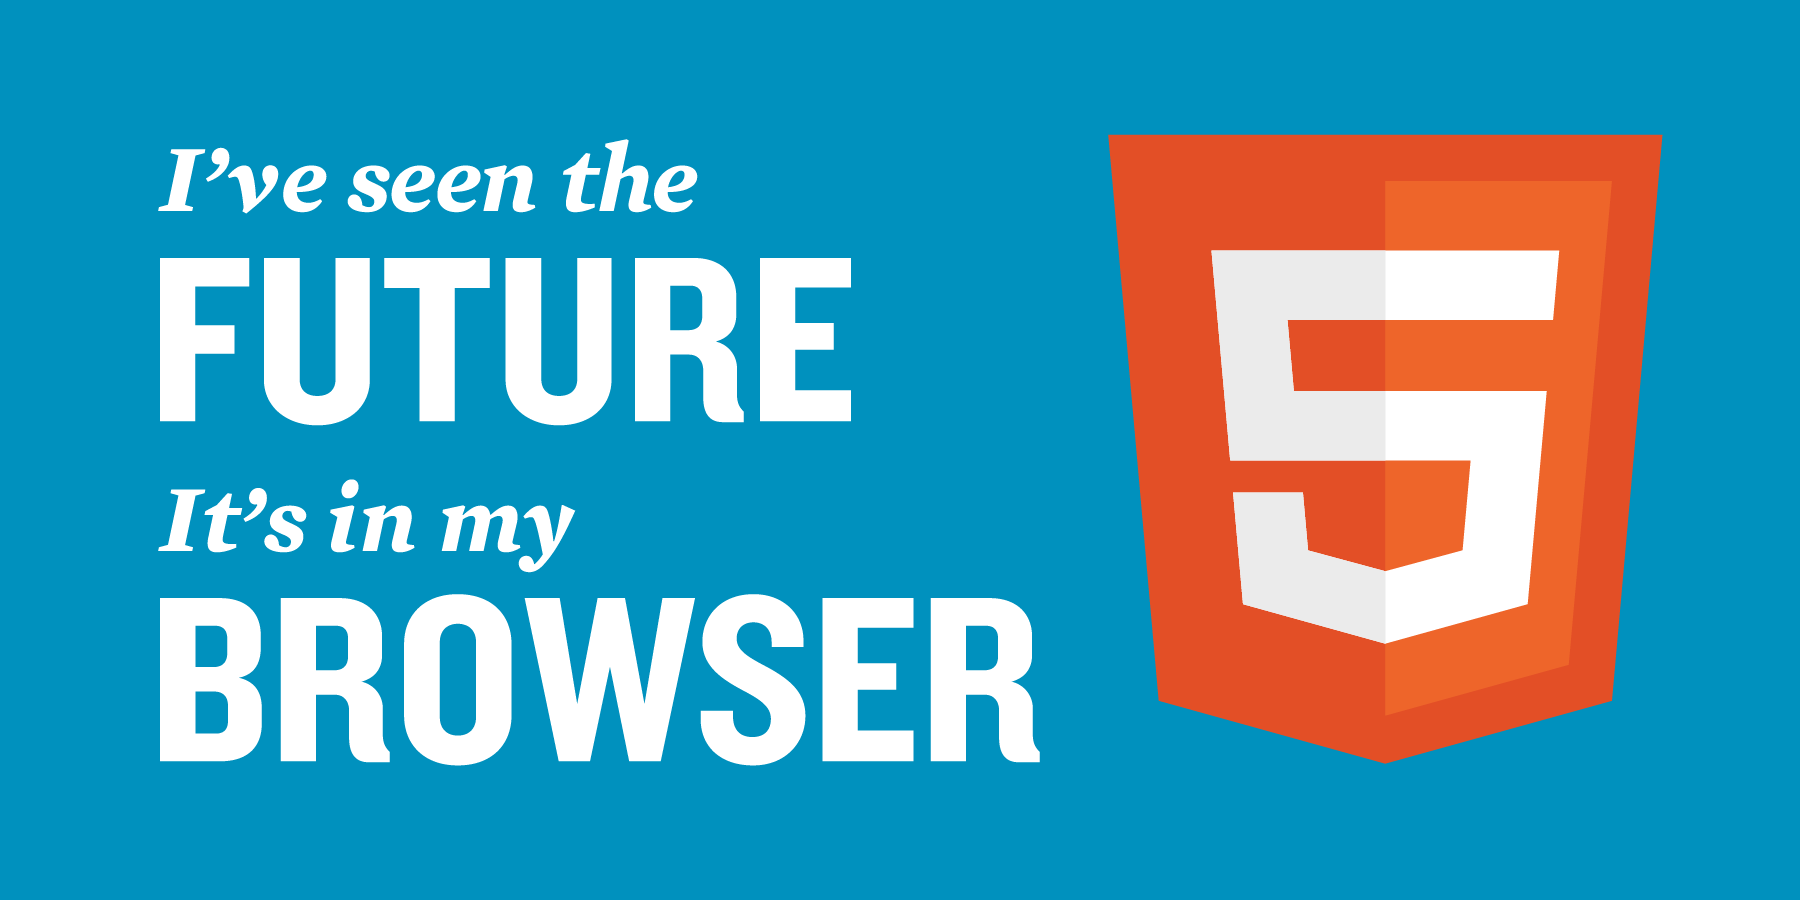 HTML 5: Past, Present & Future